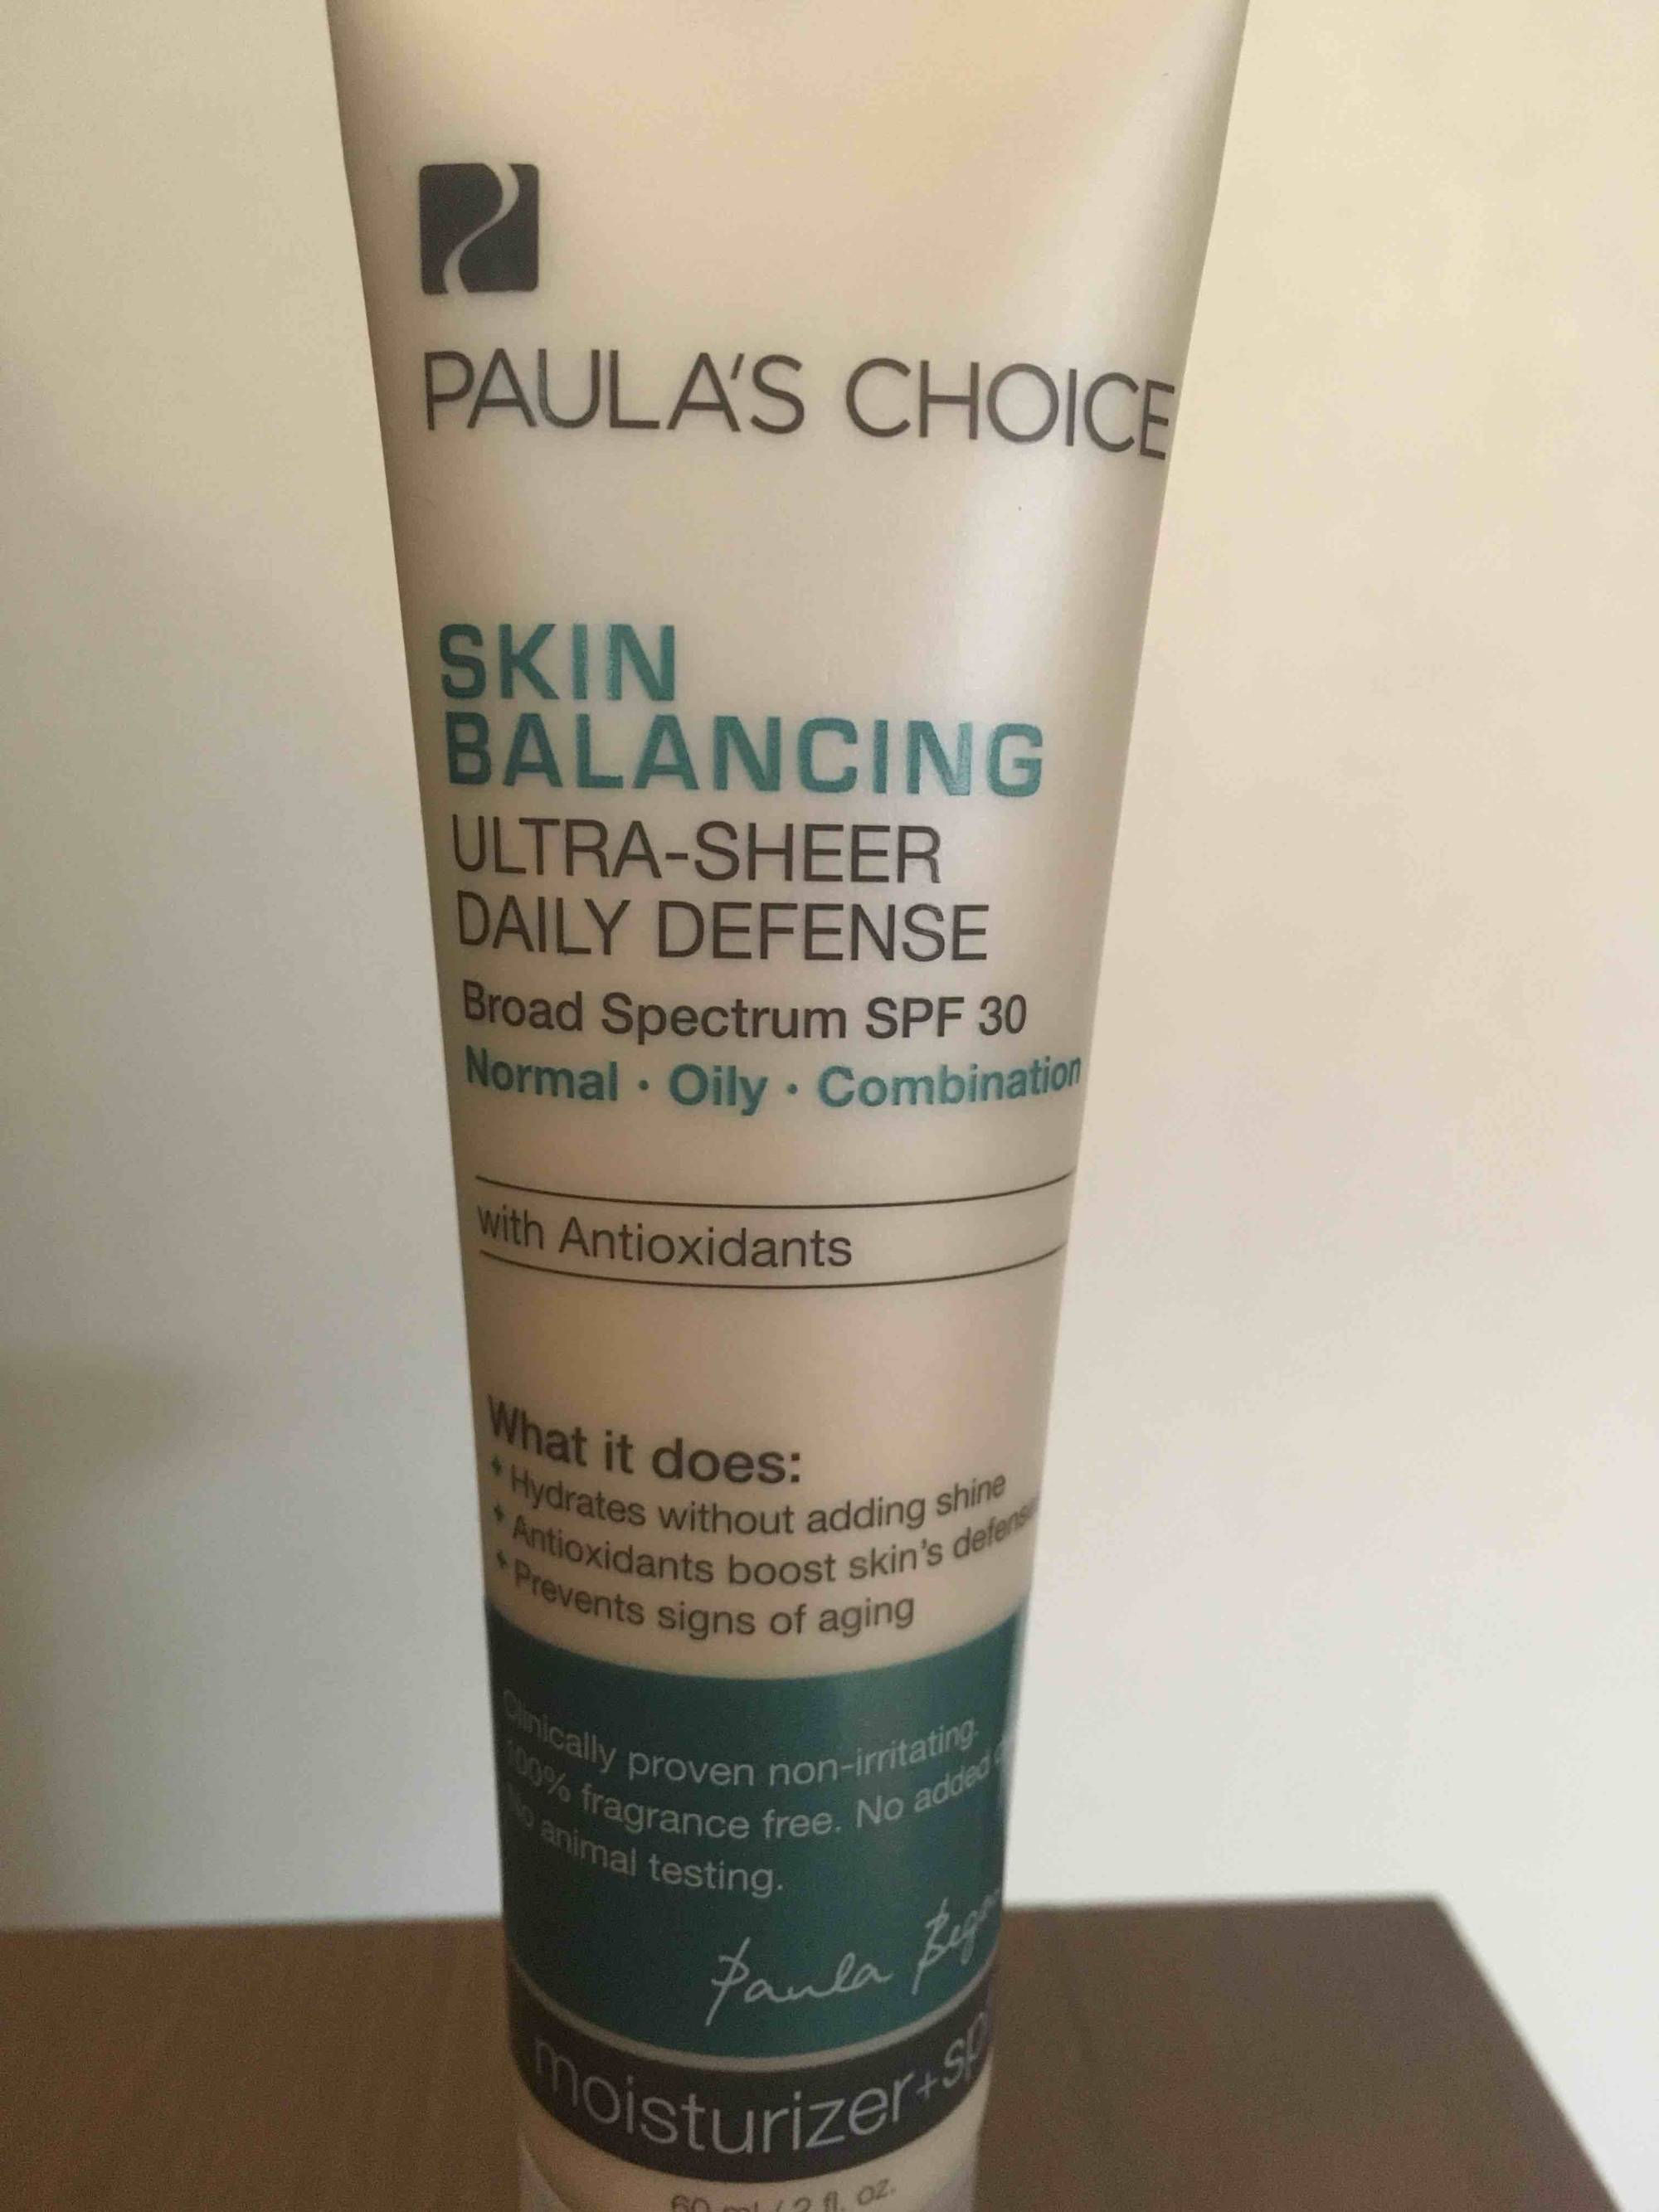 PAULA'S CHOICE - Skin balancing - Ultra-sheer daily defense